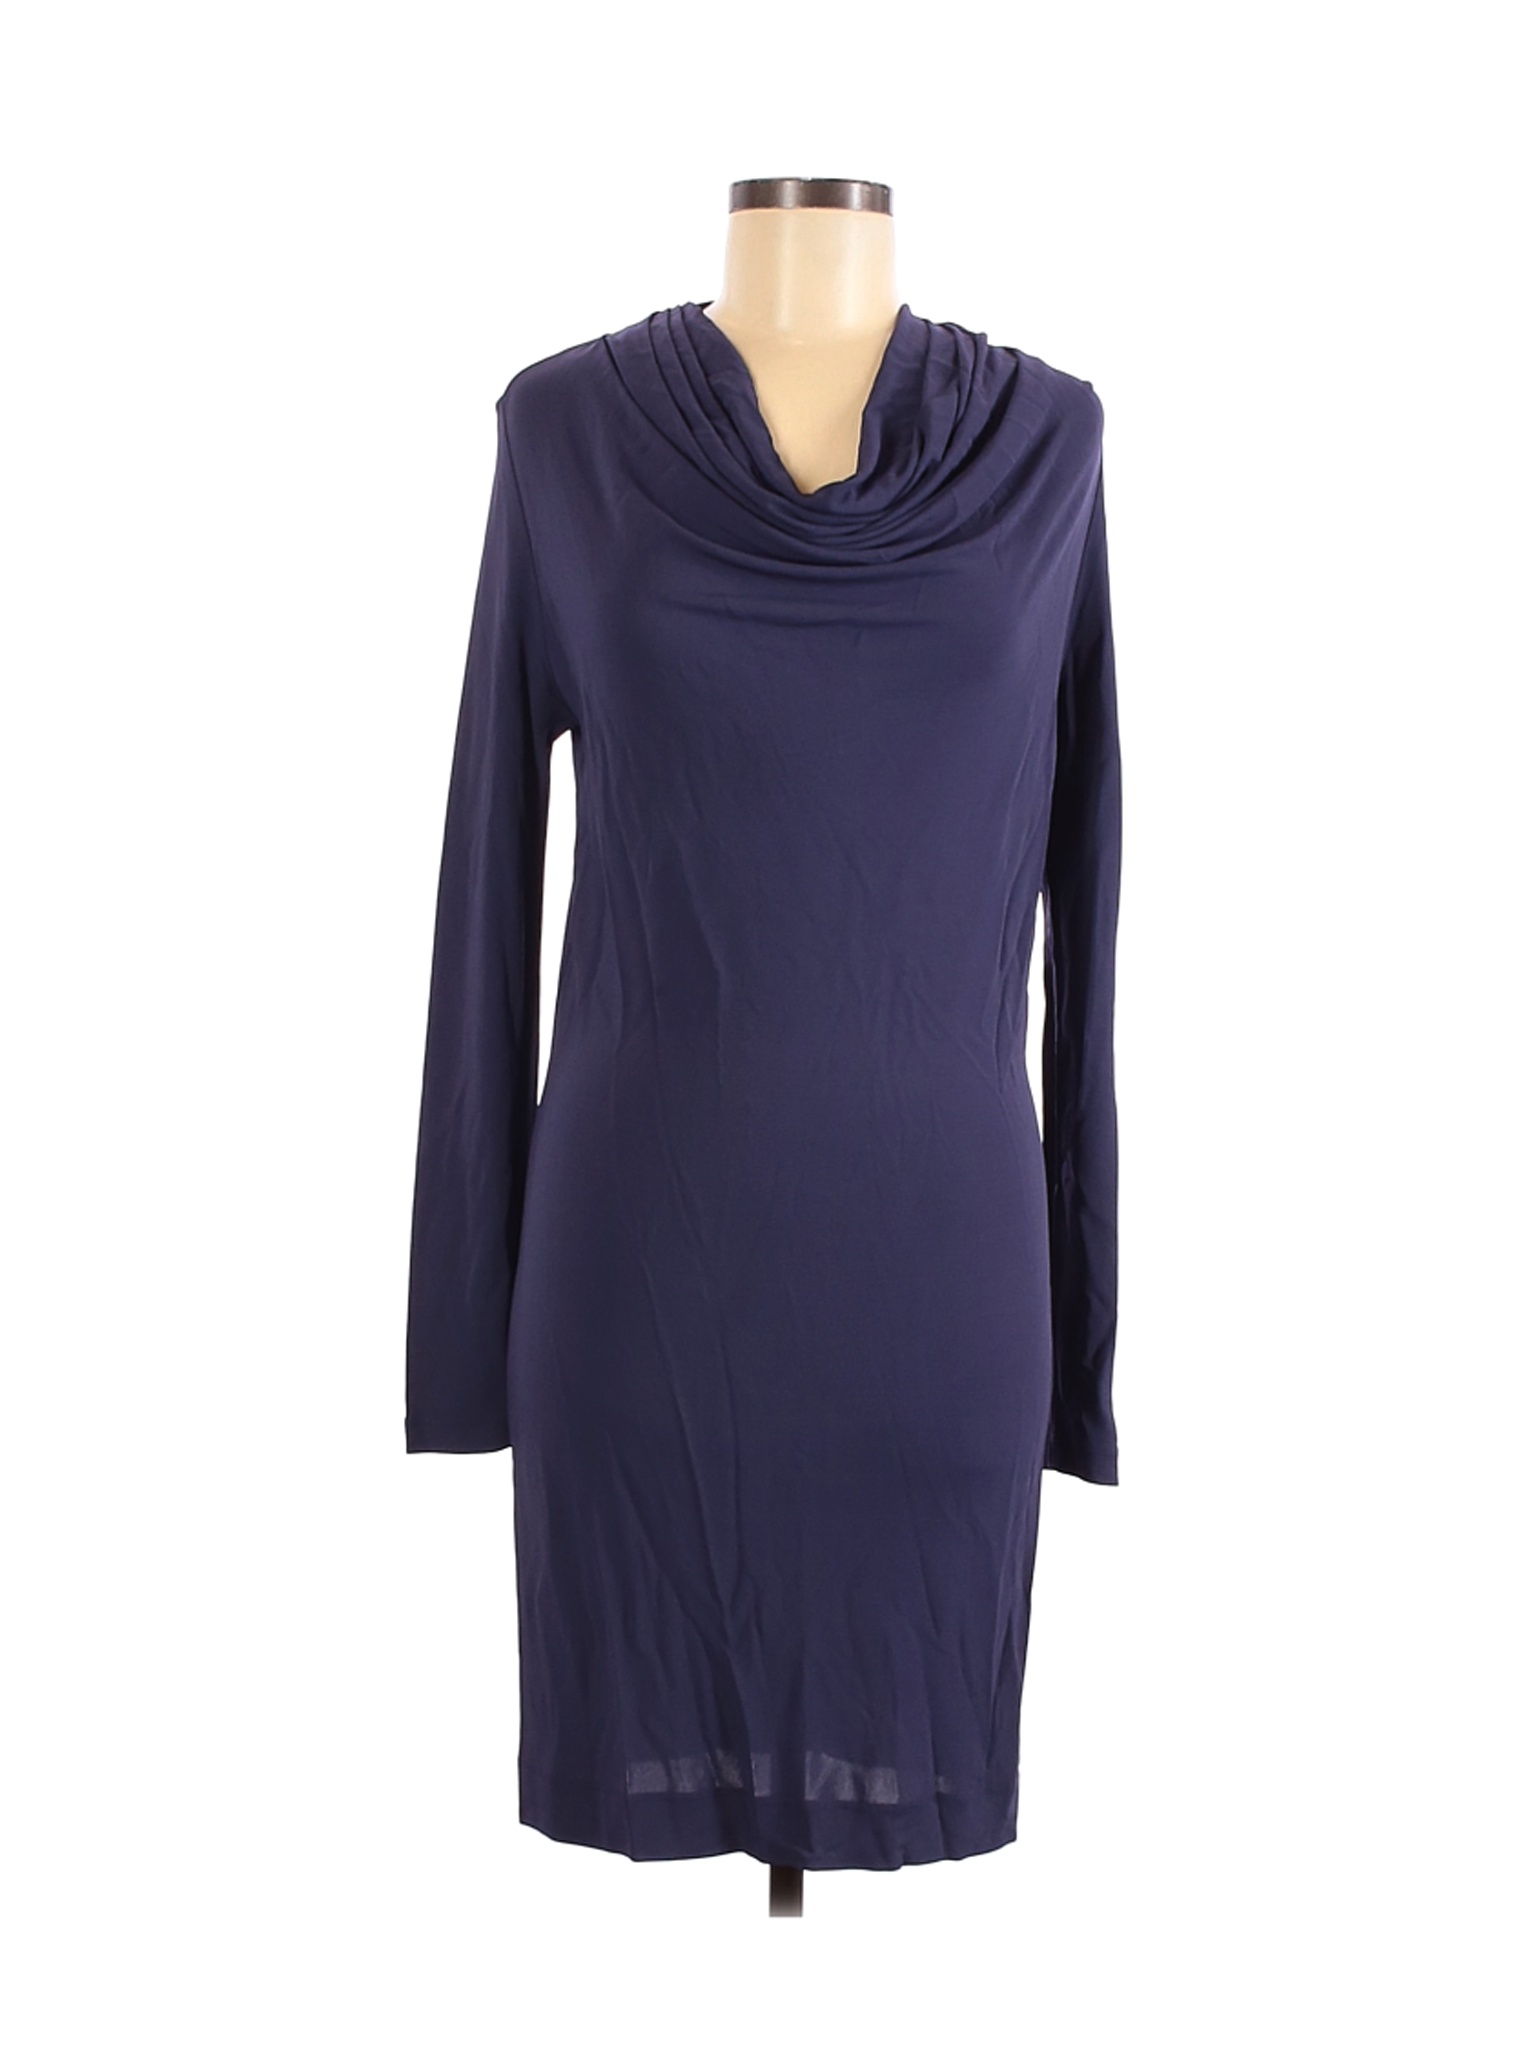 LAVIA 18 Women Blue Casual Dress M | eBay